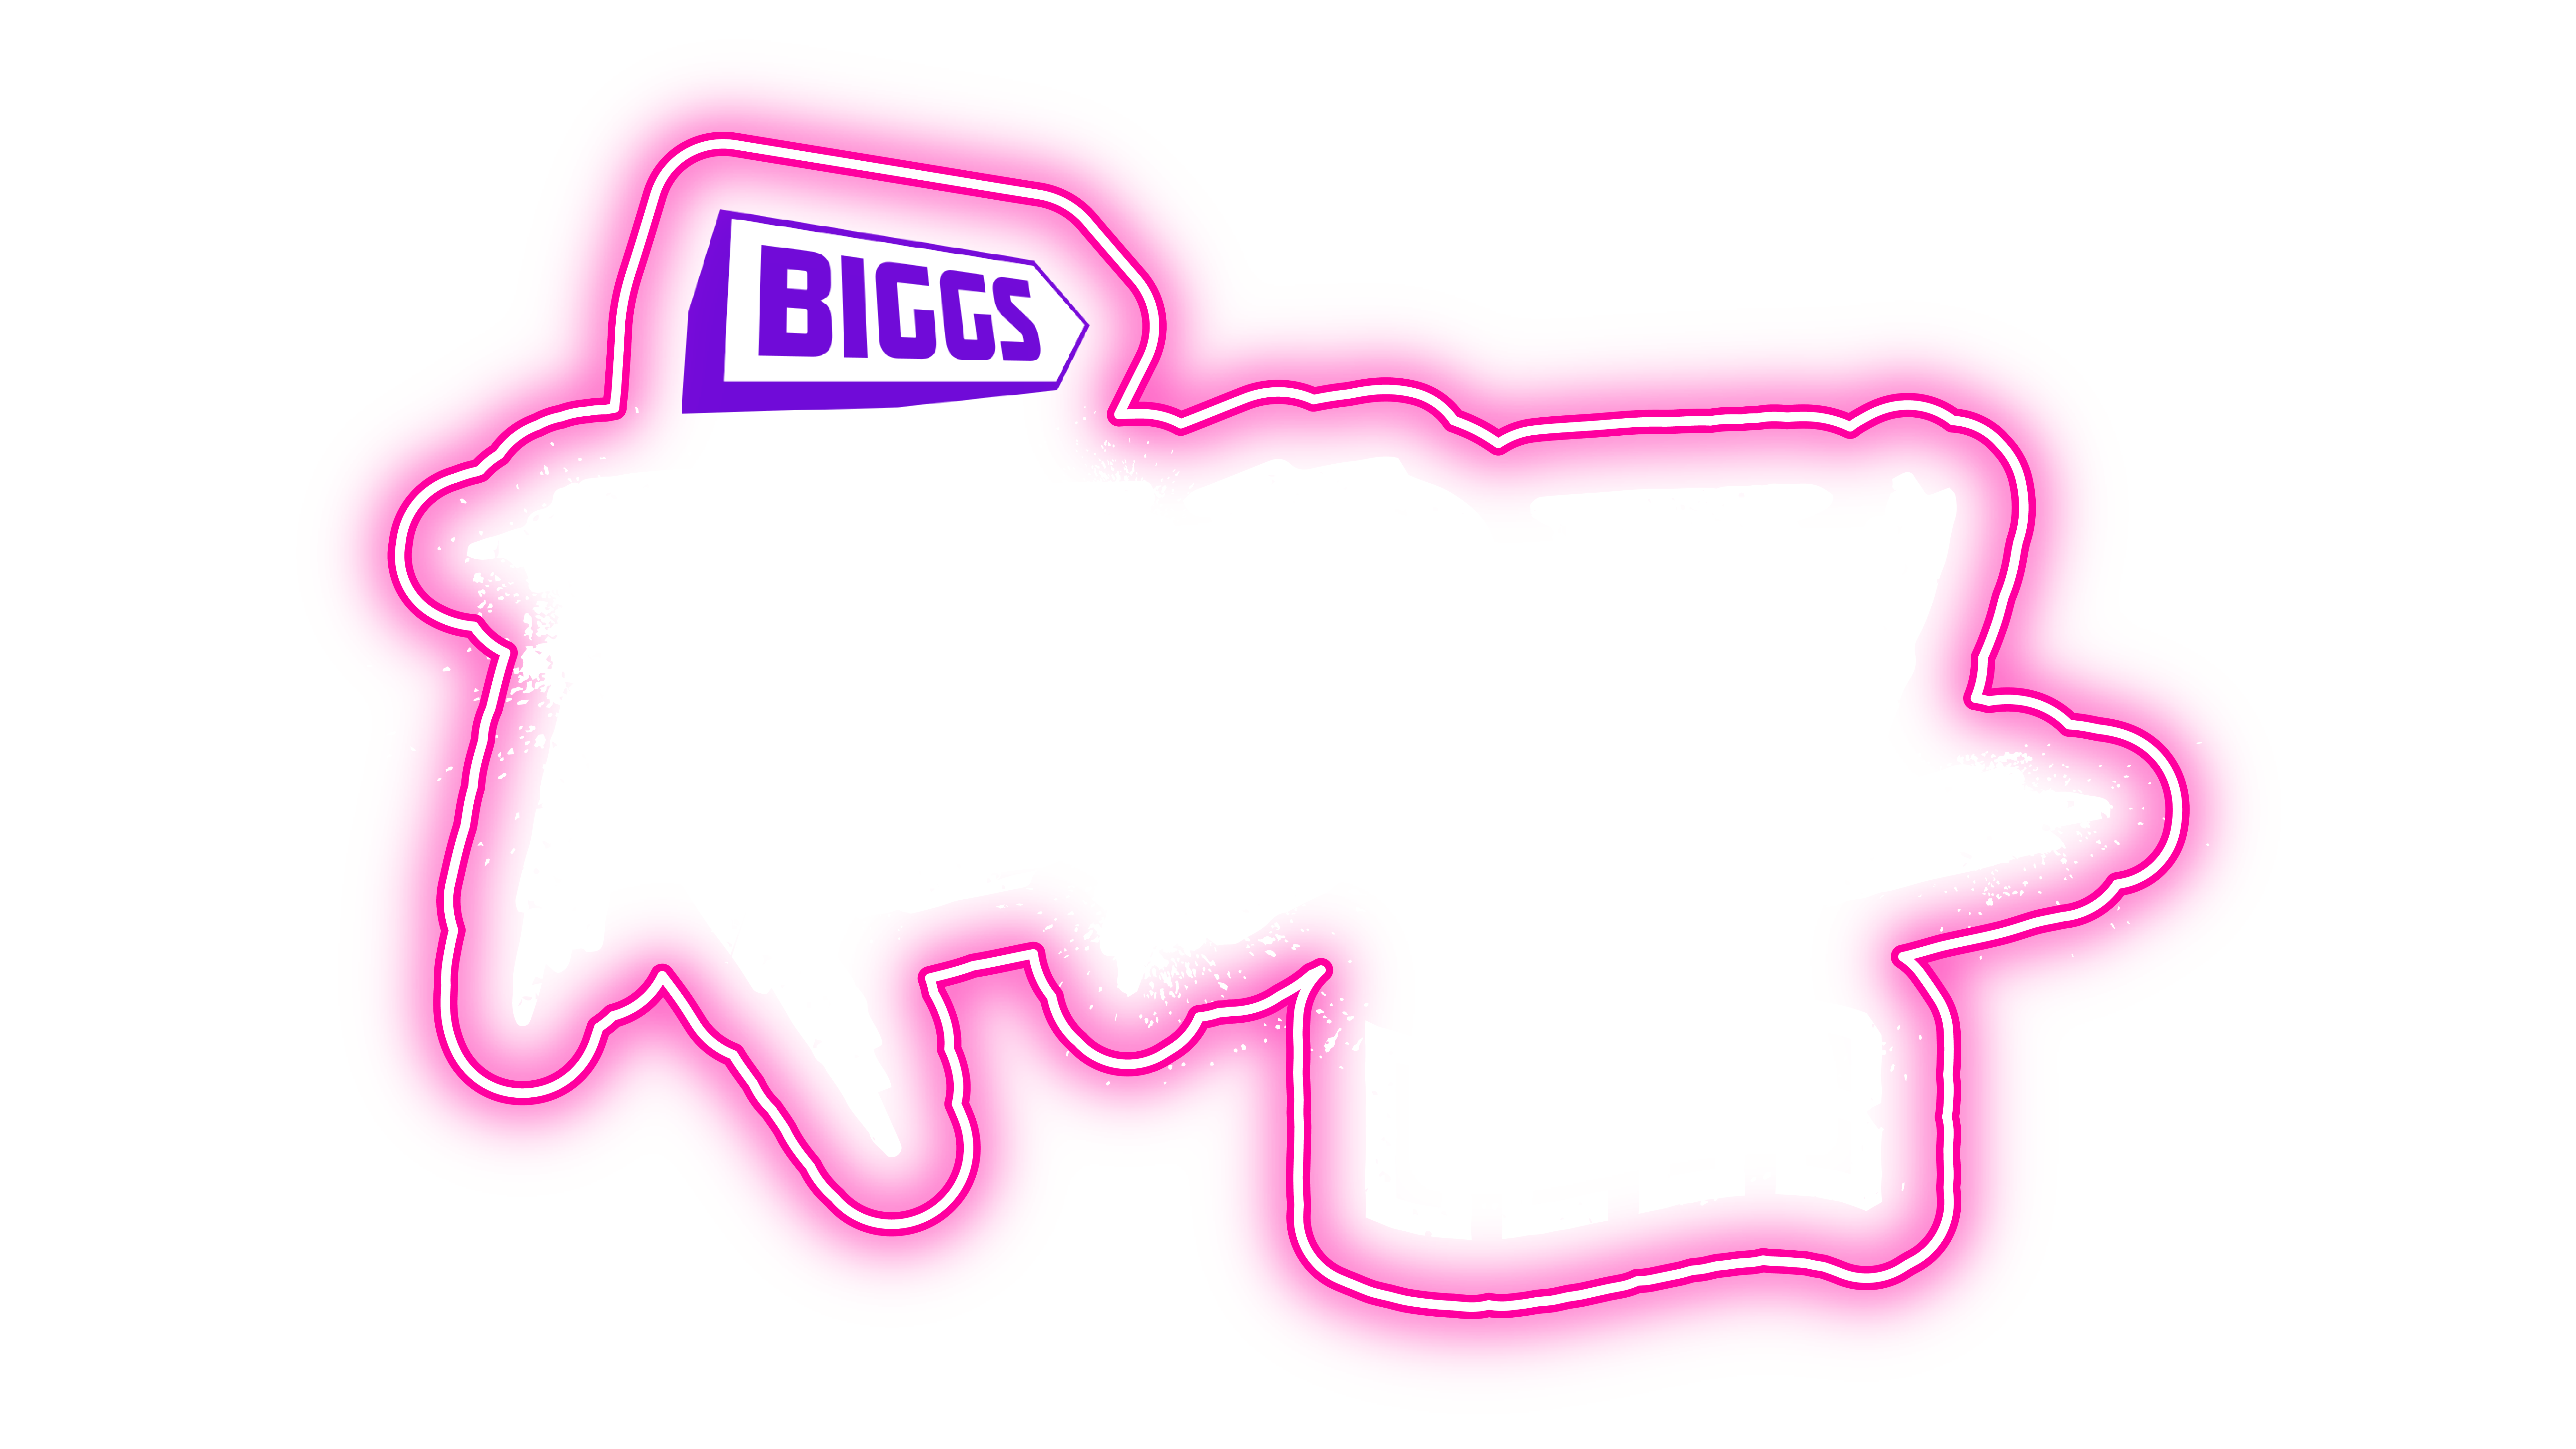 BIGGS REBEL CLUB – CELEBRA O 13º ANIVERSÁRIO CONNOSCO!